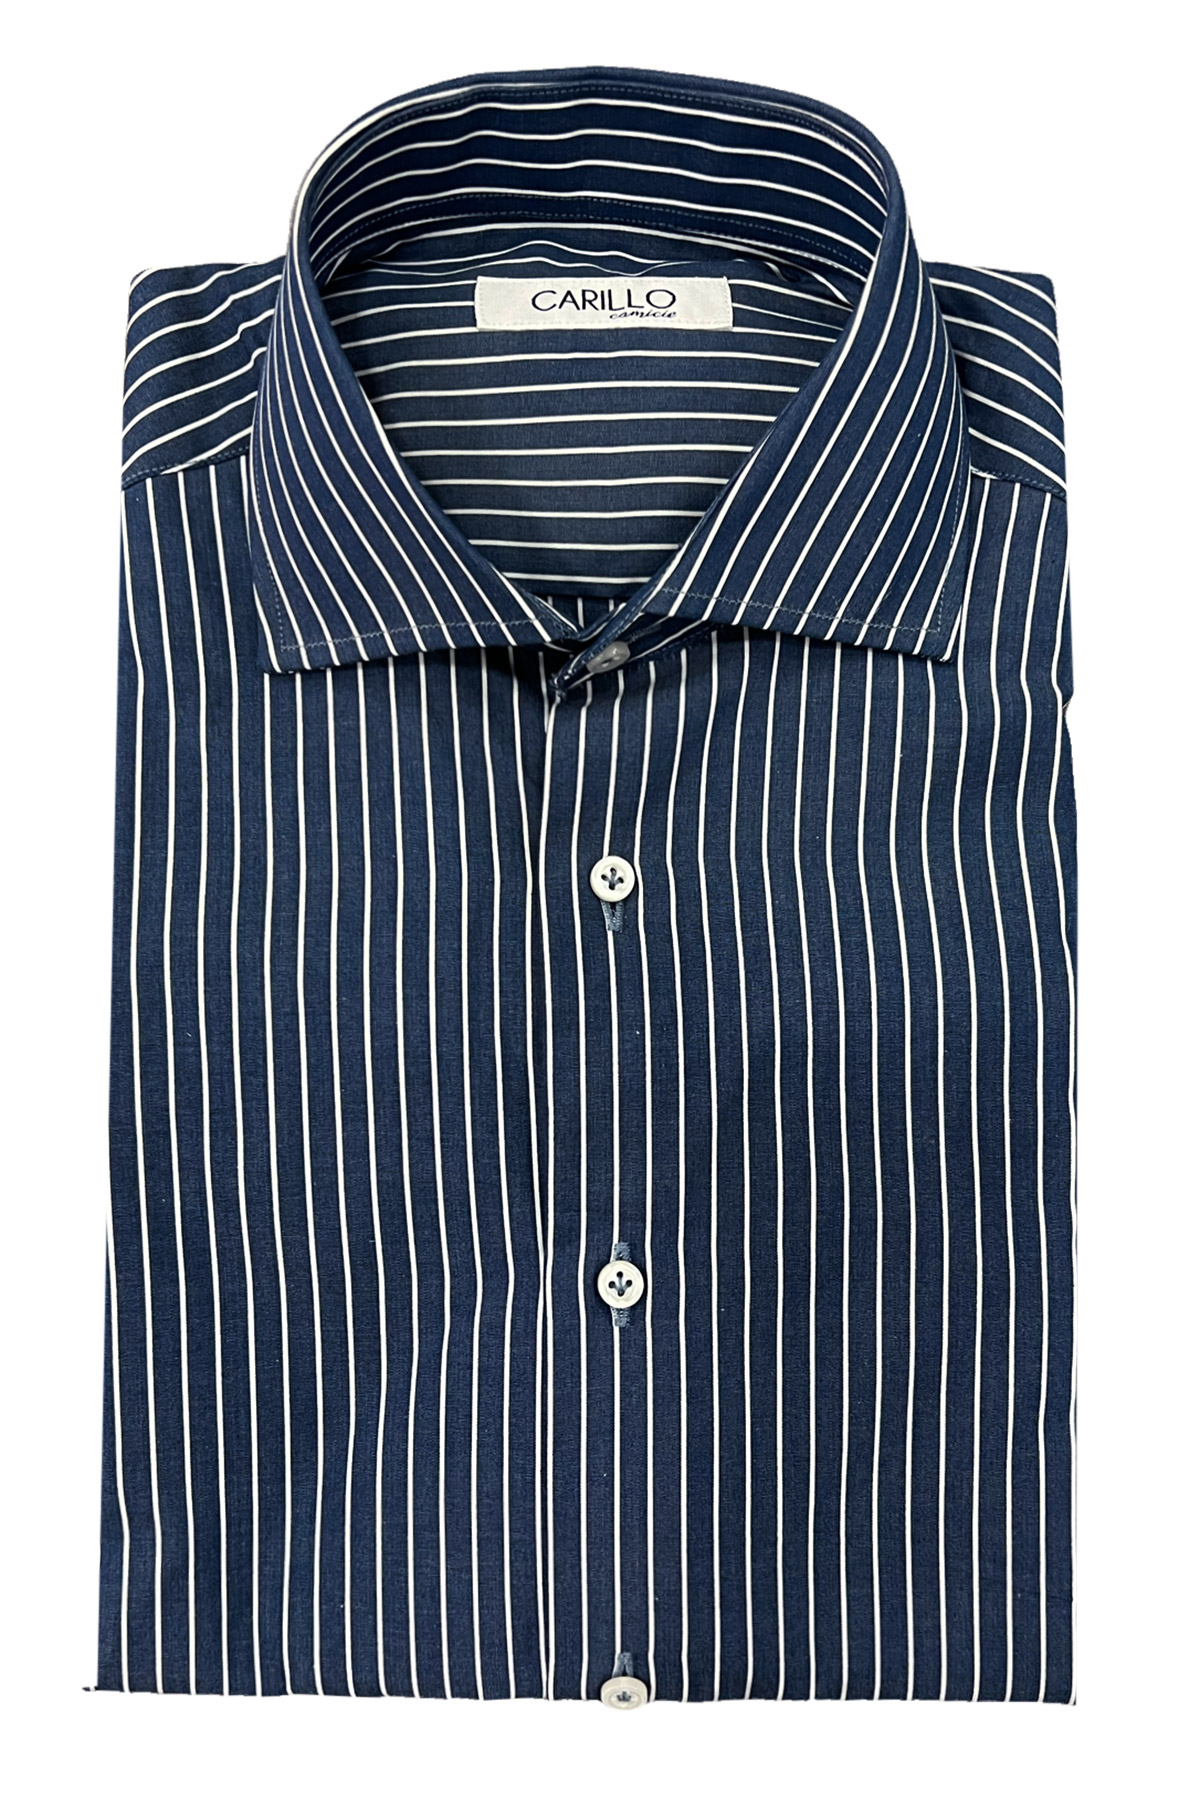 Camicia Uomo a Righe blu notte vestibilita slim fit collo francese cotone 100%